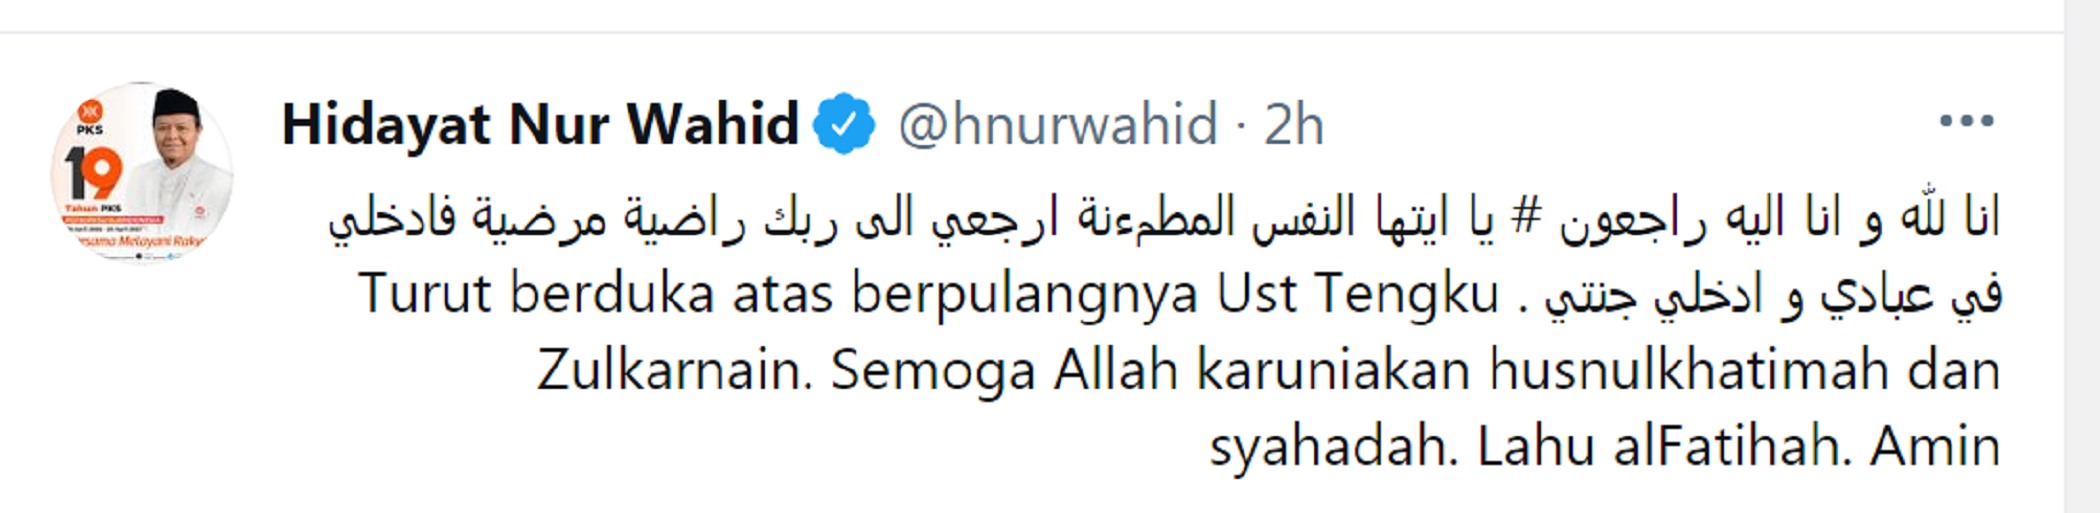 Selamat Jalan Selamanya, Wakil Ketua MPR RI Hidayat Nur Wahid Sampaikan Kabar Duka Wafatnya Tengku Zulkarnain